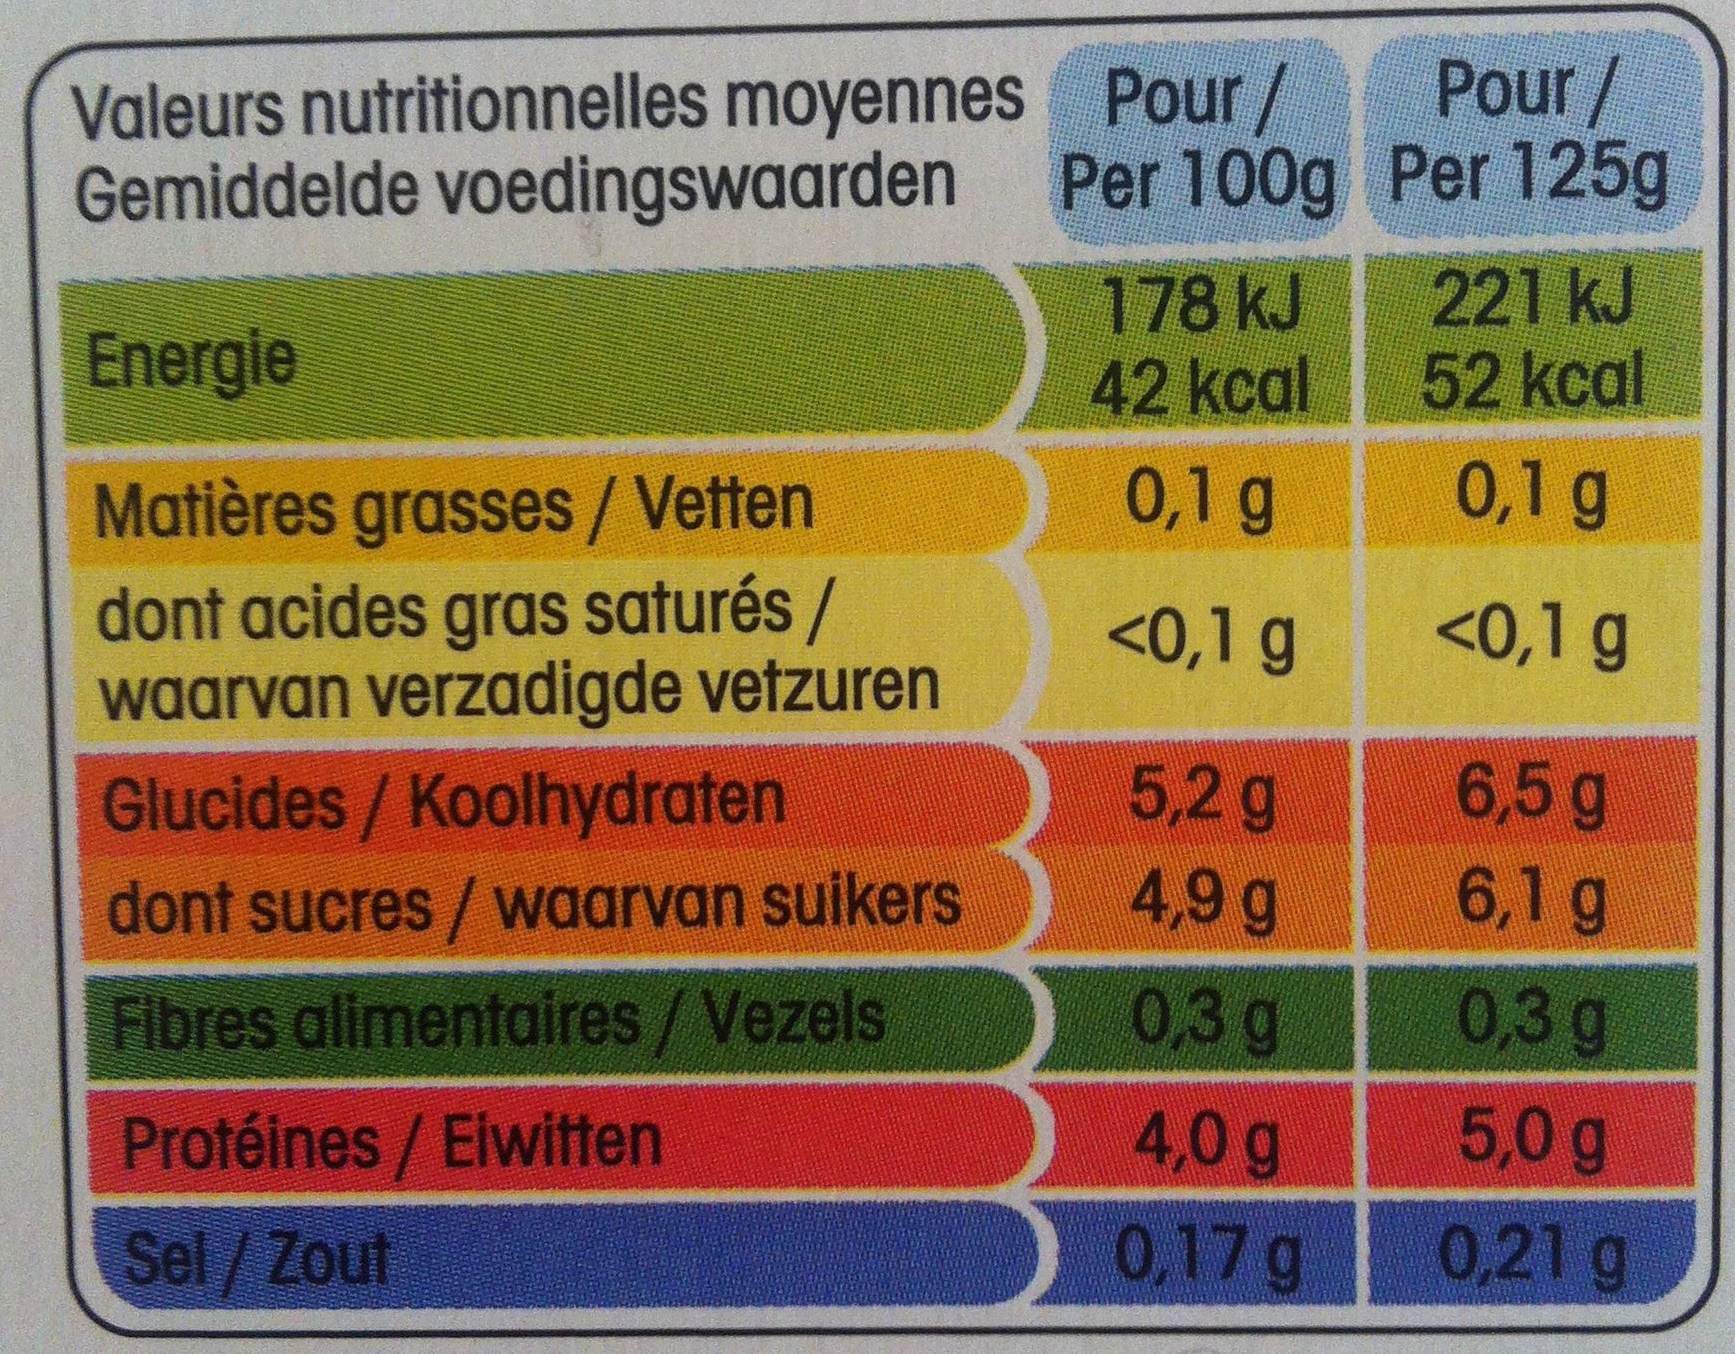 Panier de Yoplait  (0 % MG, 0 % Sucres ajoutés) - (Abricot, Ananas, Cerise, Fraise, Mûre, Pêche) 16 Pots - Informations nutritionnelles - fr